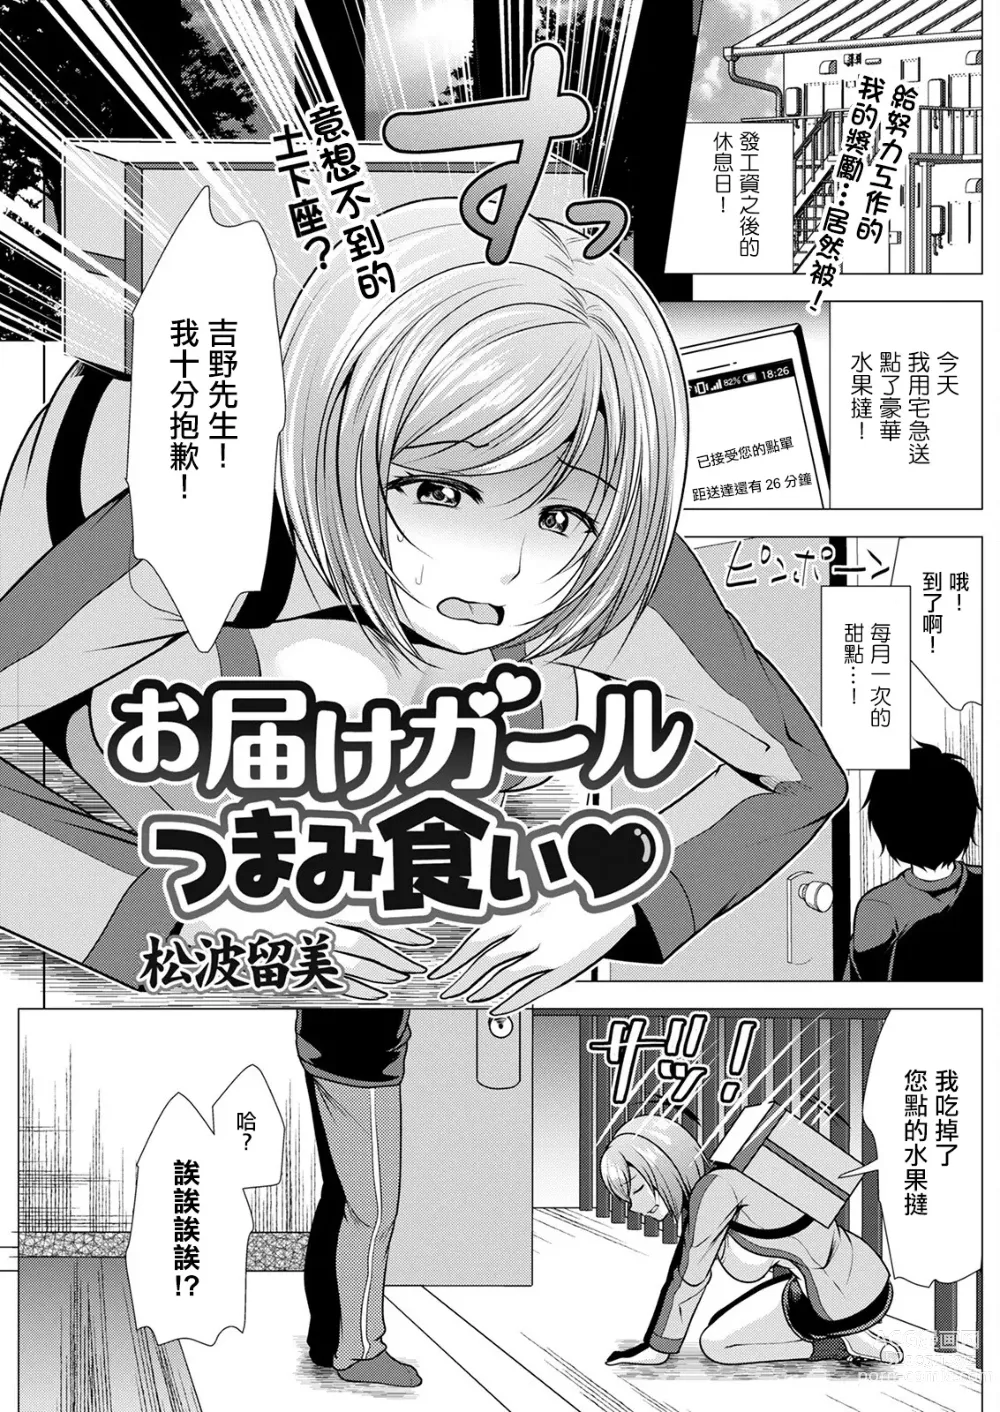 Page 1 of manga Otodoke Girl Tsumamigui